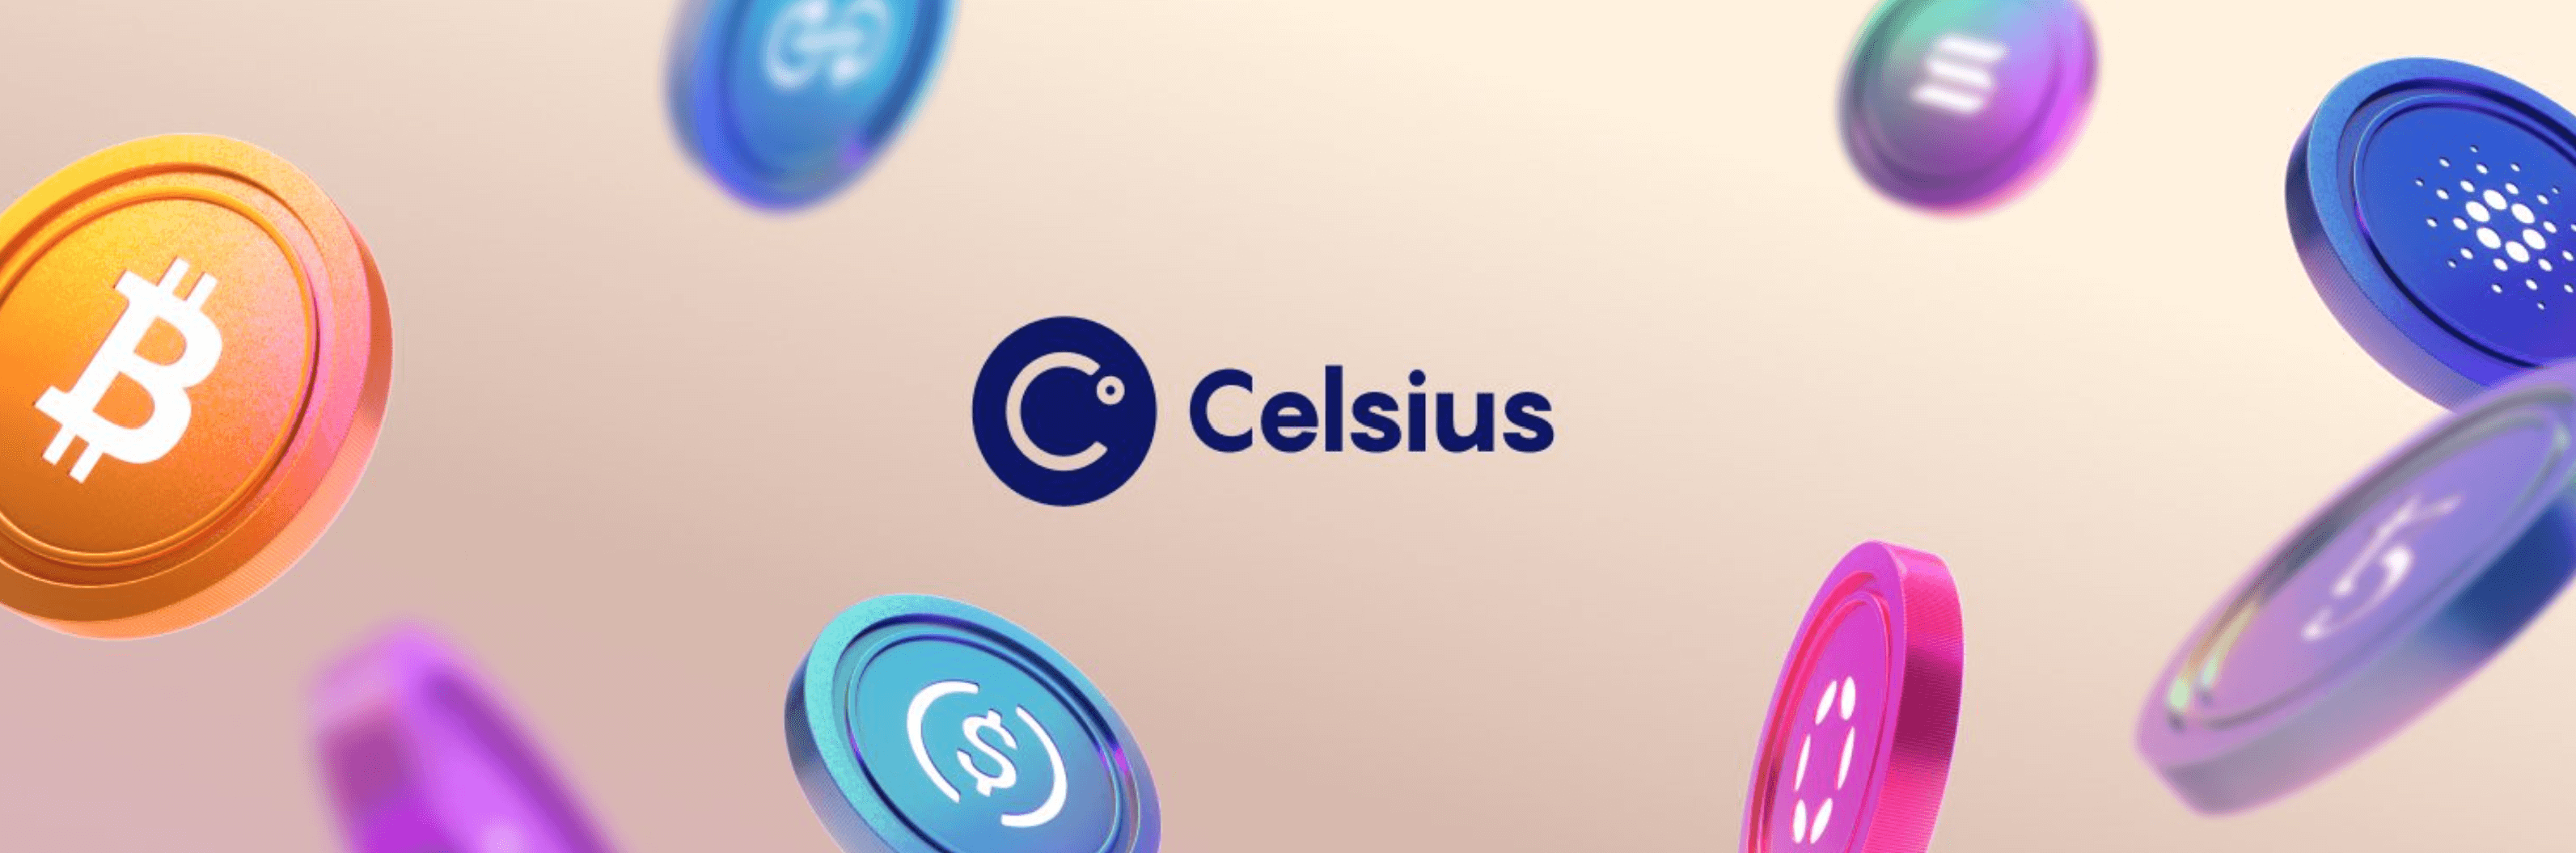 Celsius declares bankruptcy